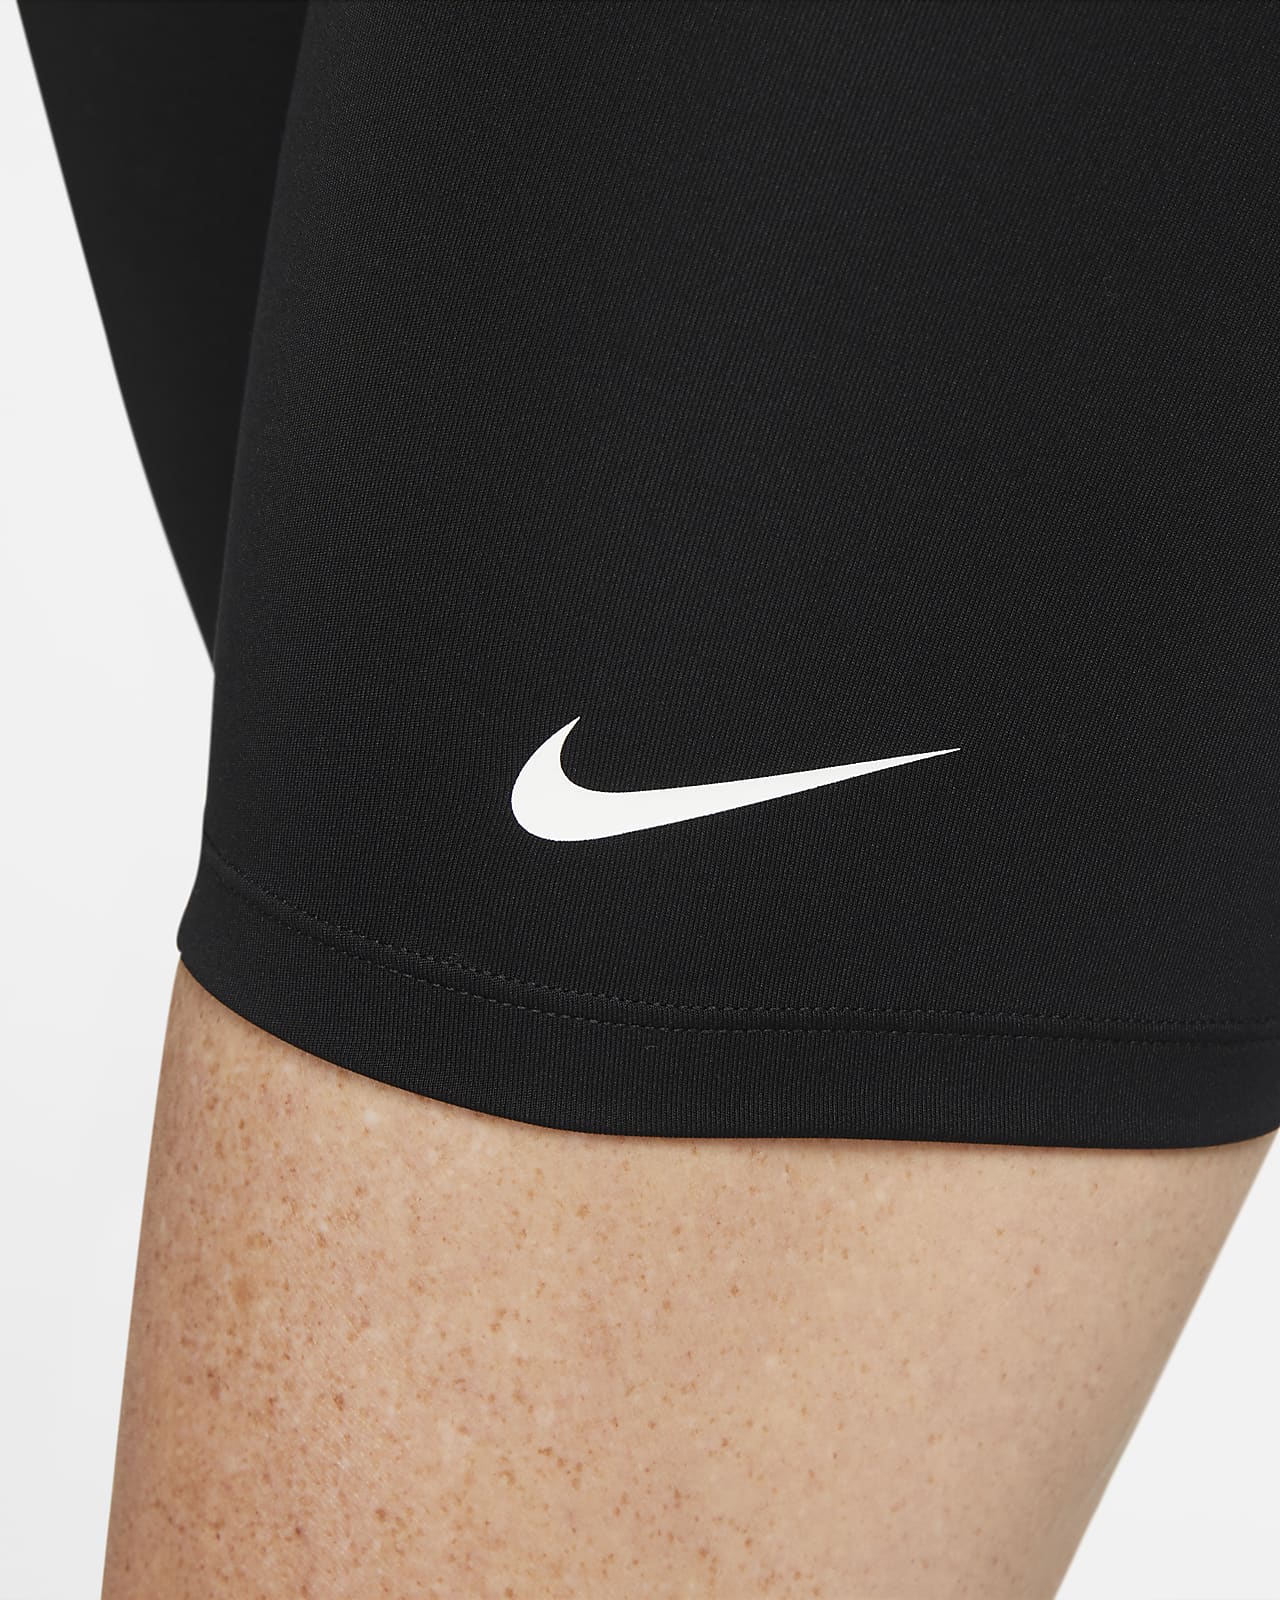 Nike One Dri-FIT Maternity Shorts Black/White